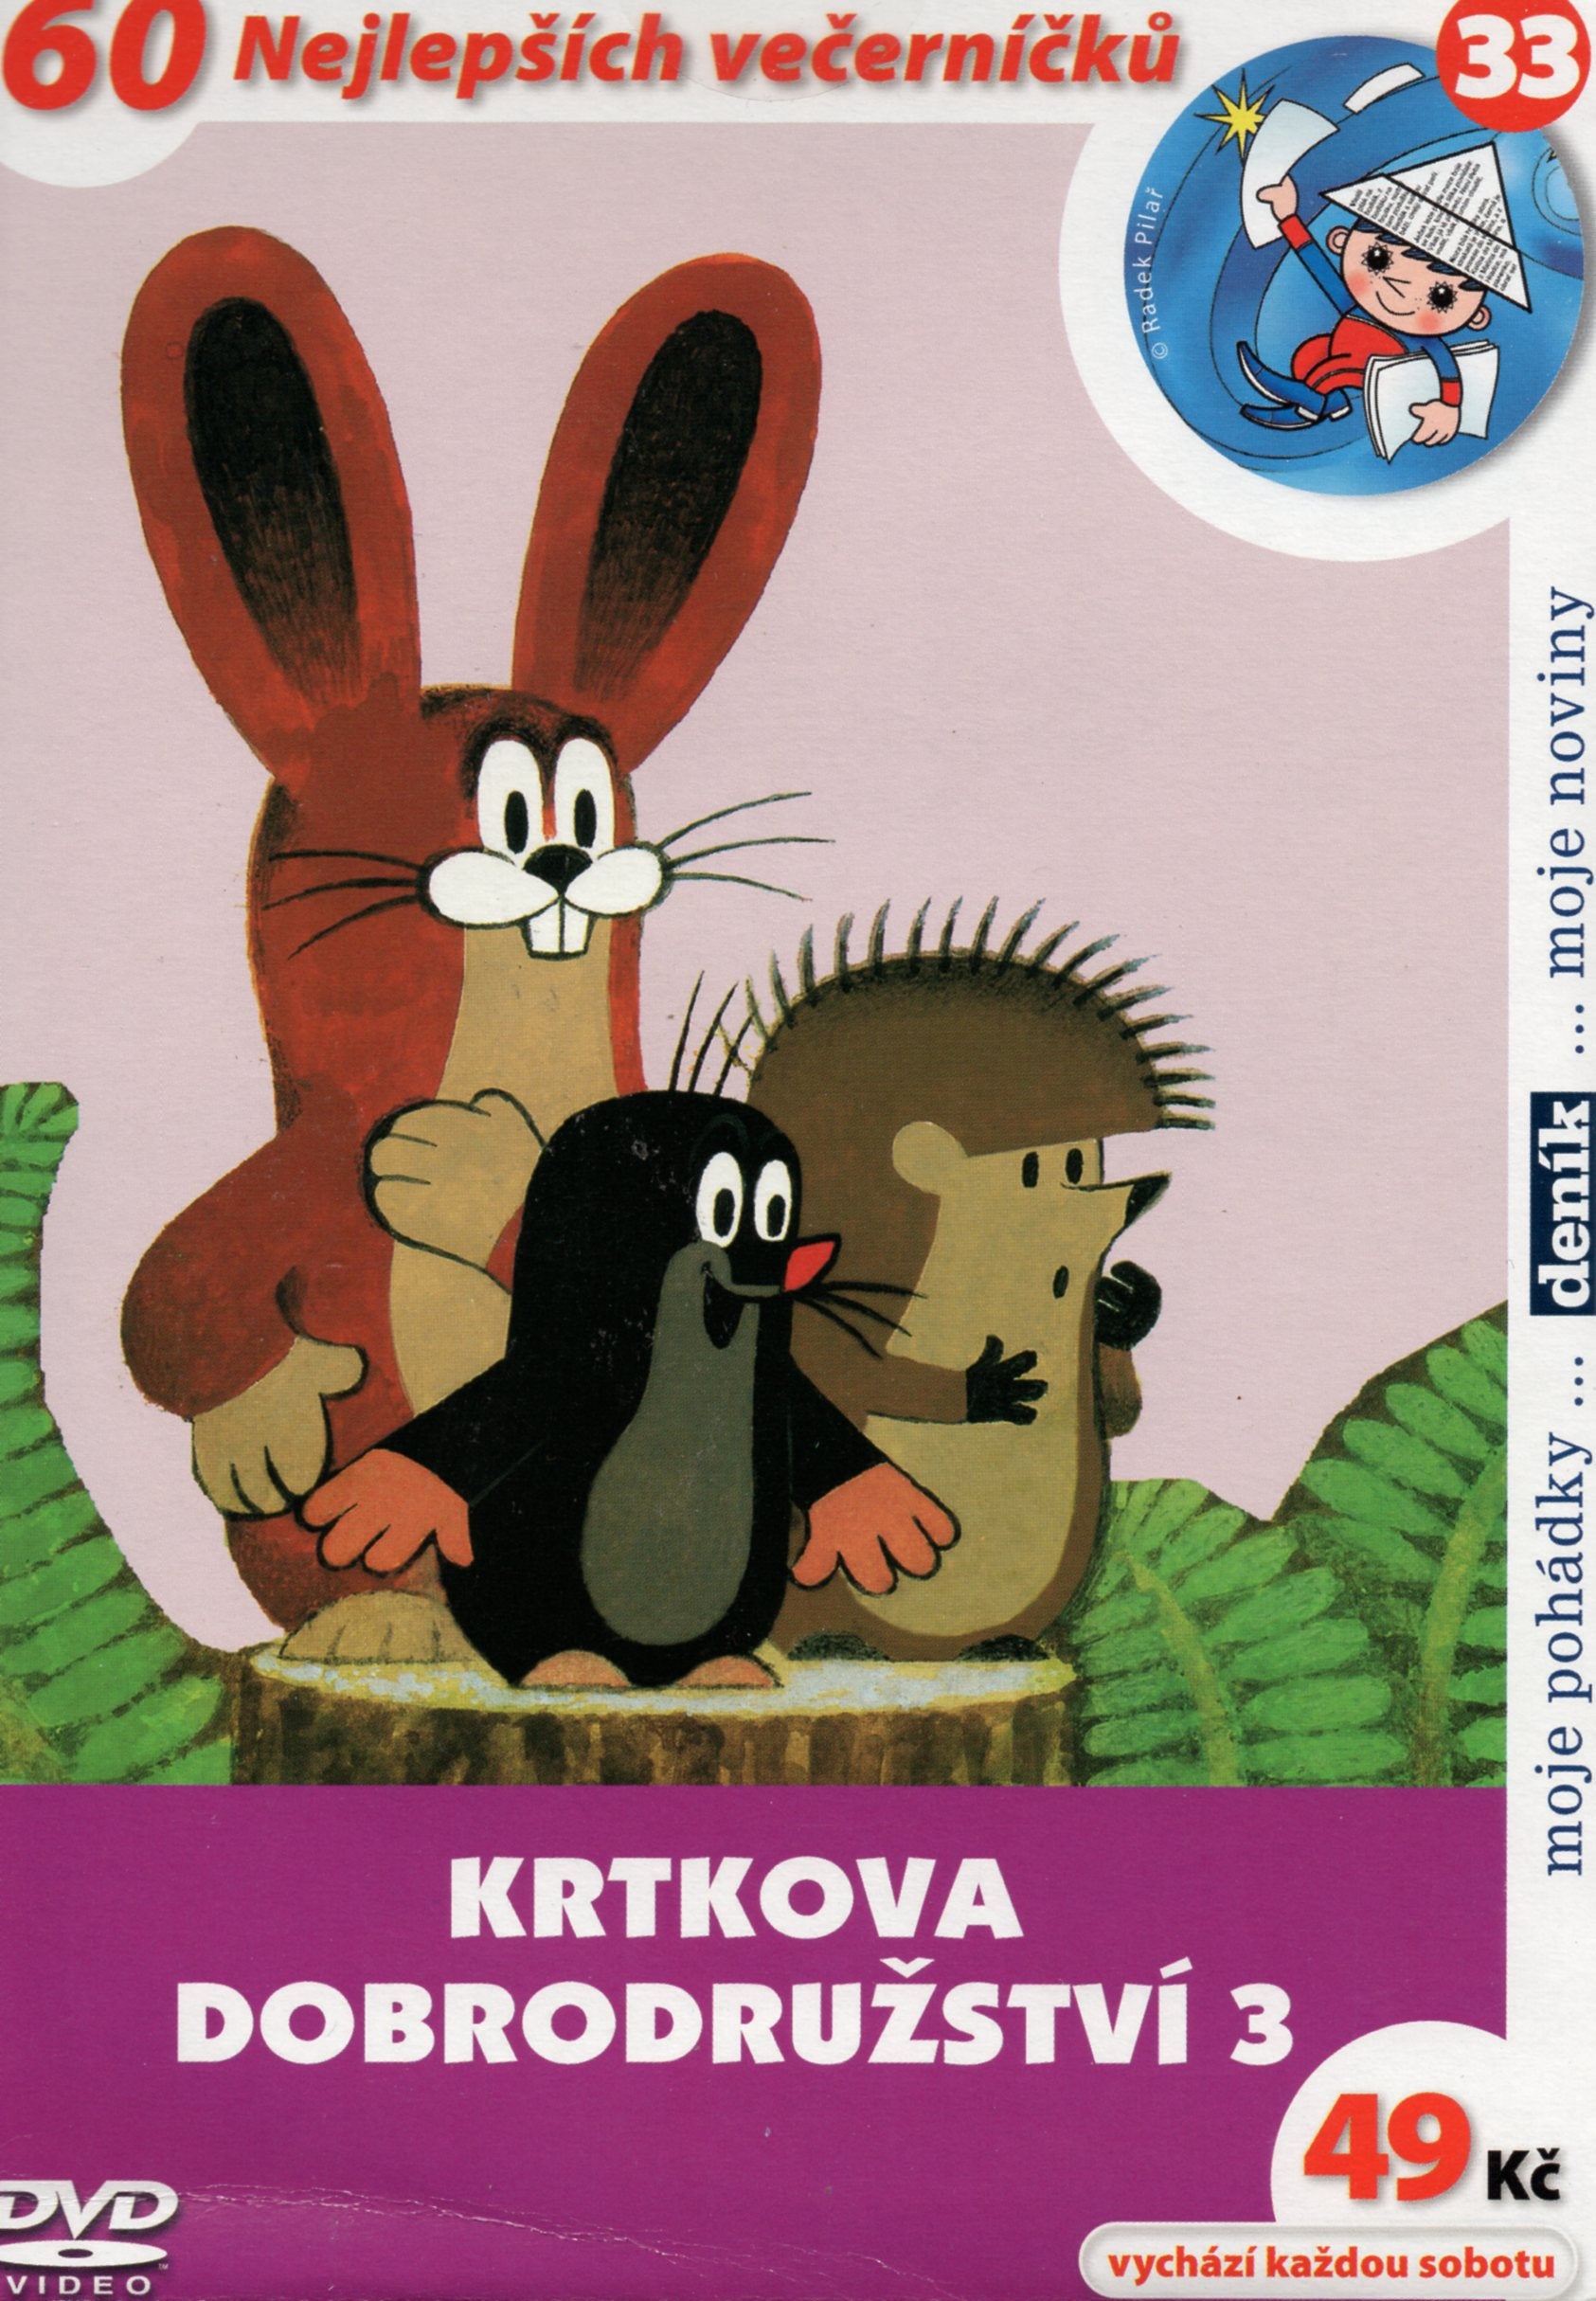 Die Abenteuer des kleinen Maulwurfs / Krtkova dobrodruzstvi 3 DVD